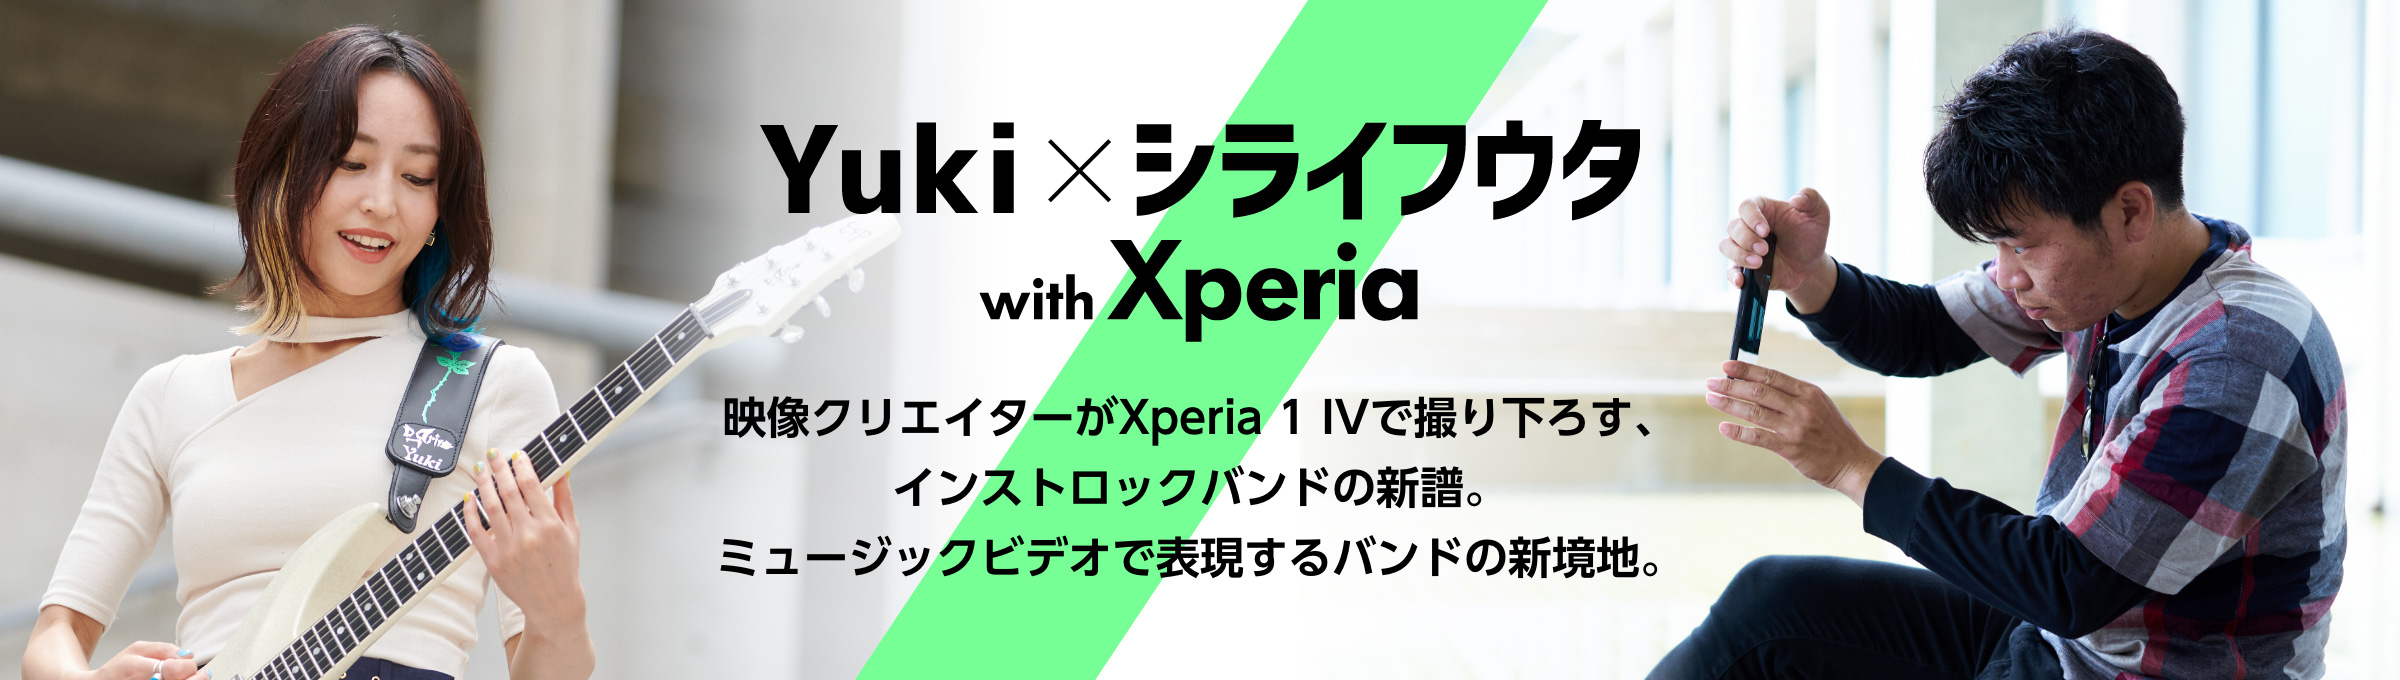 Yuki x シライフウタ with Xperia 映像クリエイターがXperia 1 IV（エクスペリア ワン マークフォー）で撮り下ろす、インストロックバンドの新譜。ミュージックビデオで表現するバンドの新境地。